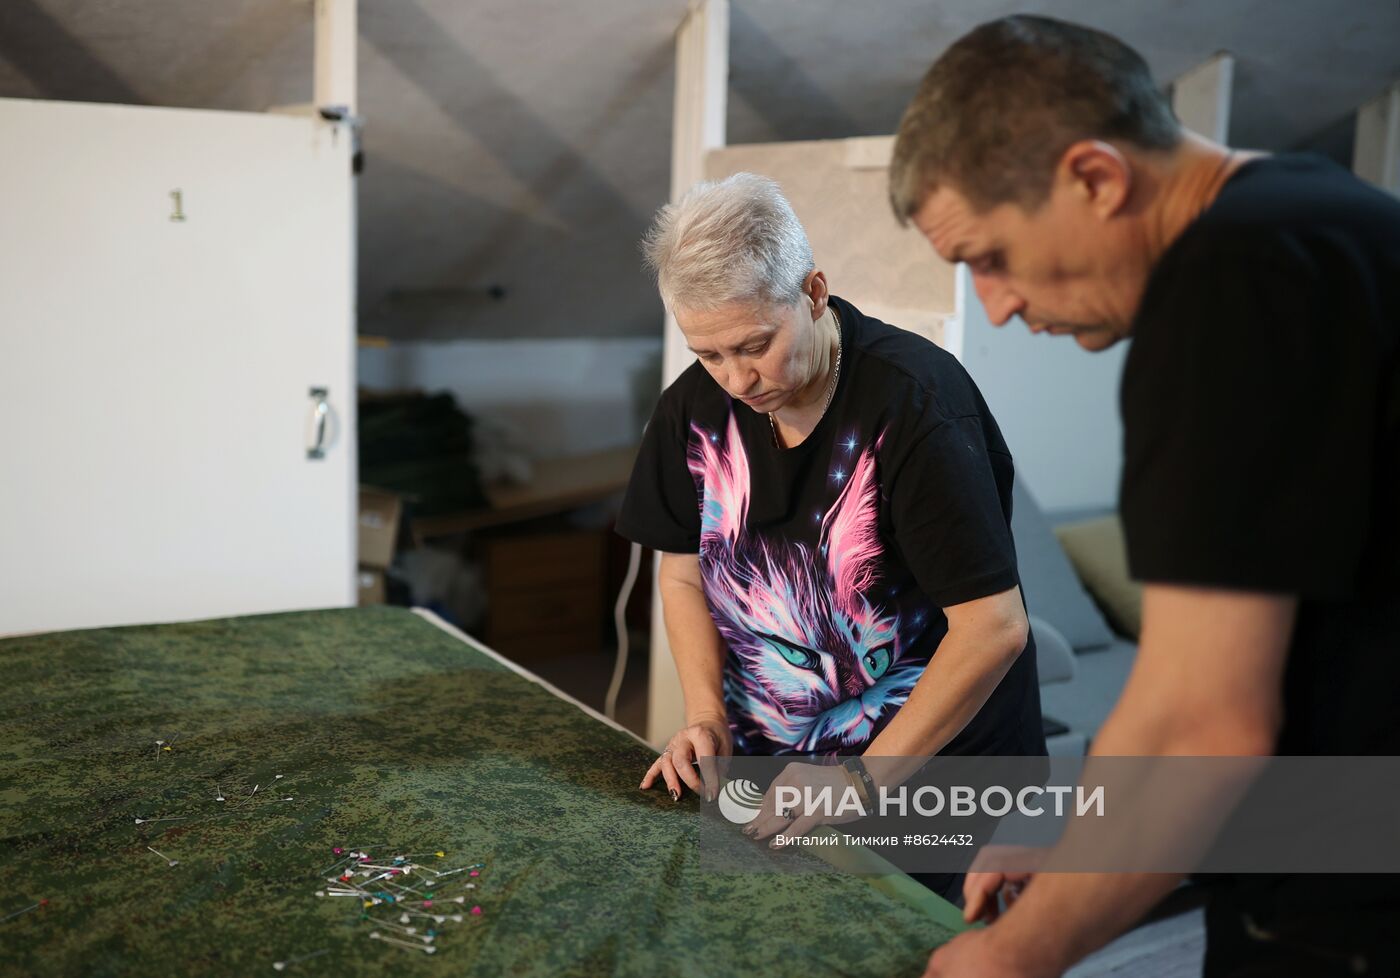 Производство антидроновых одеял для СВО в Краснодарском крае